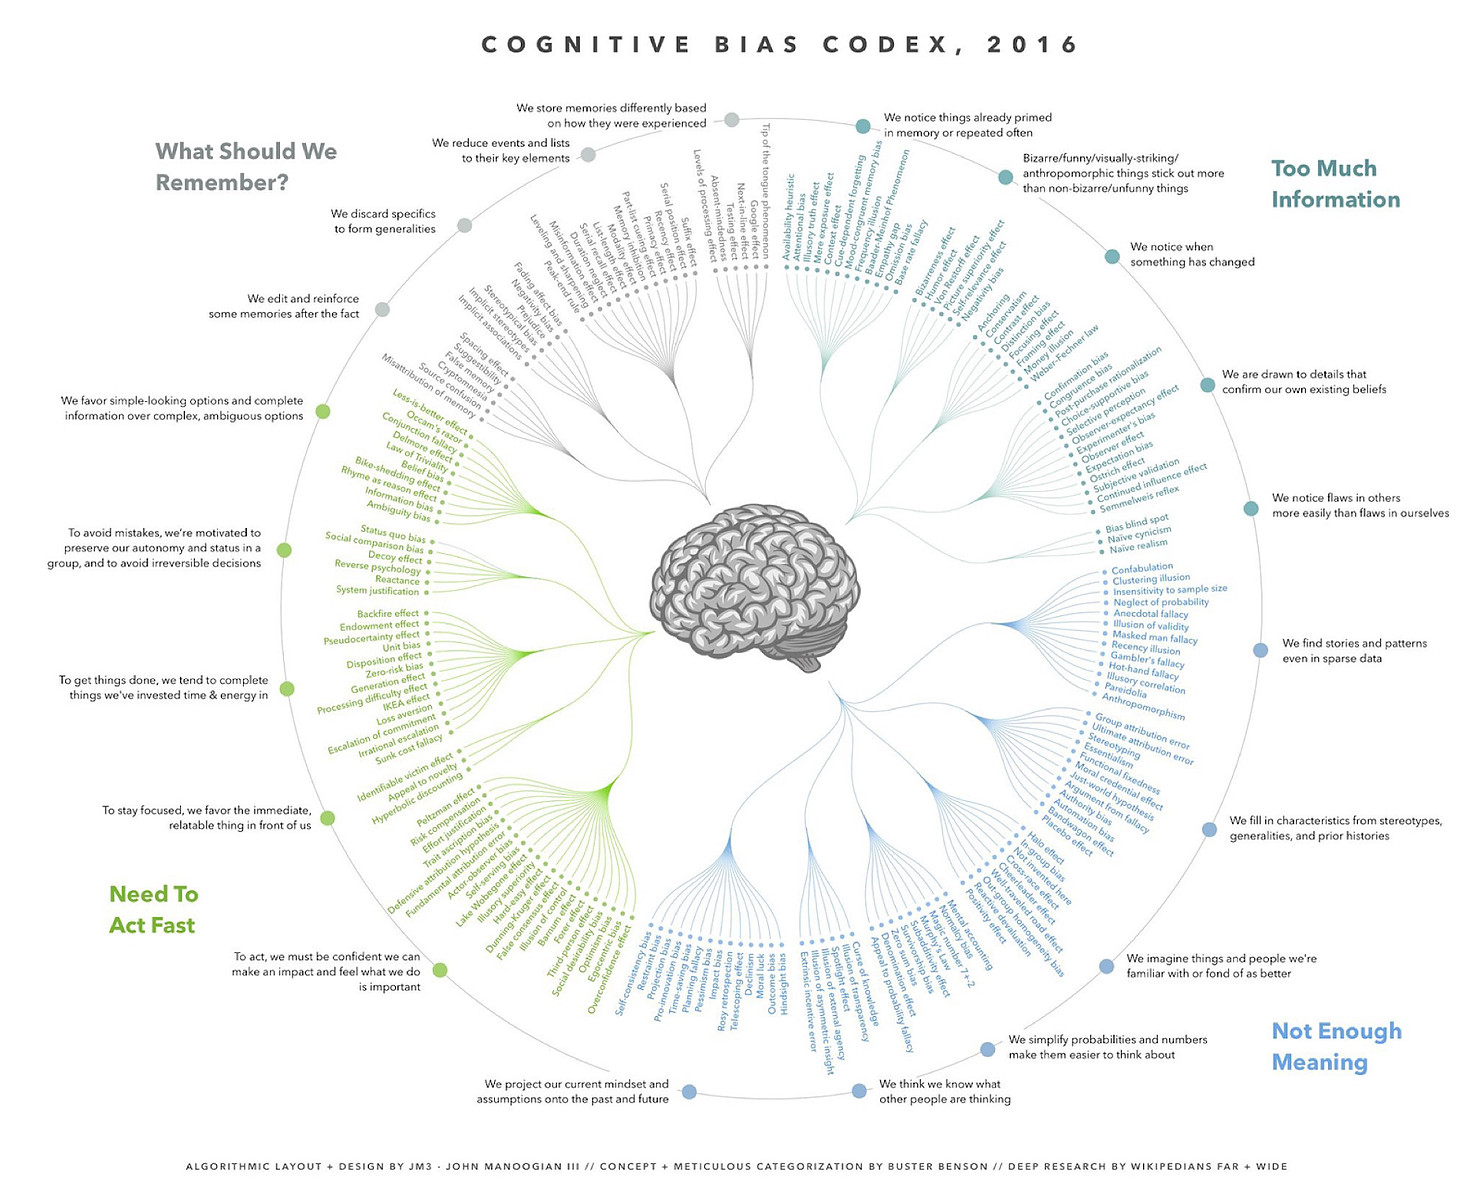 Imagem sobre "Cognitive Bias Codex", de 2016. Com alguns exemplos de vieses inconscientes